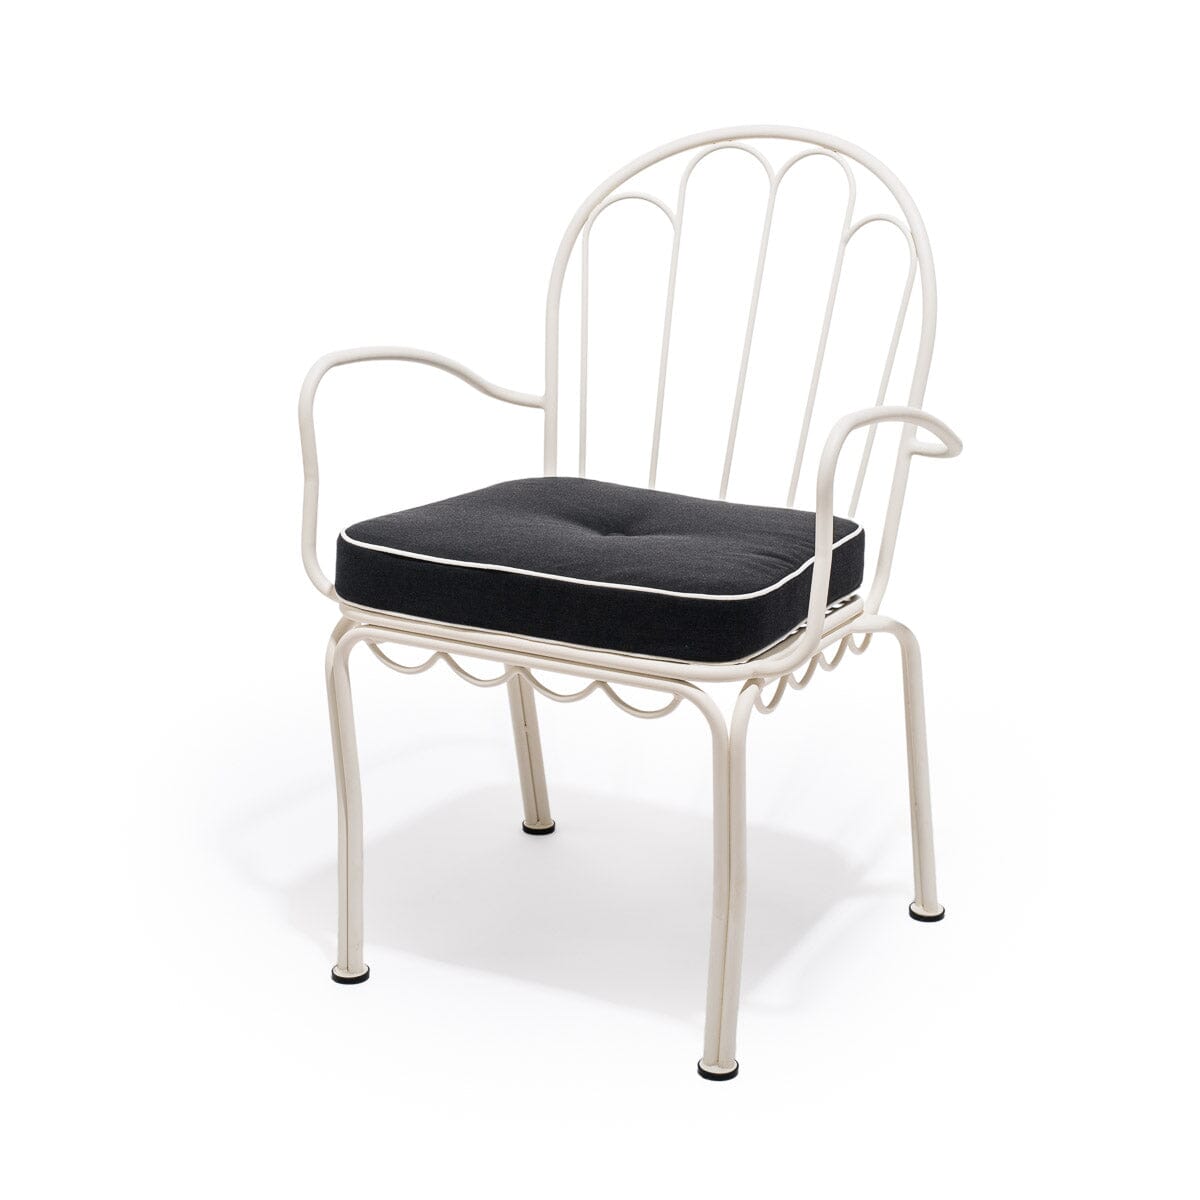 The Al Fresco Chair Cushion - Rivie Black Al Fresco Chair Cushion Business & Pleasure Co 